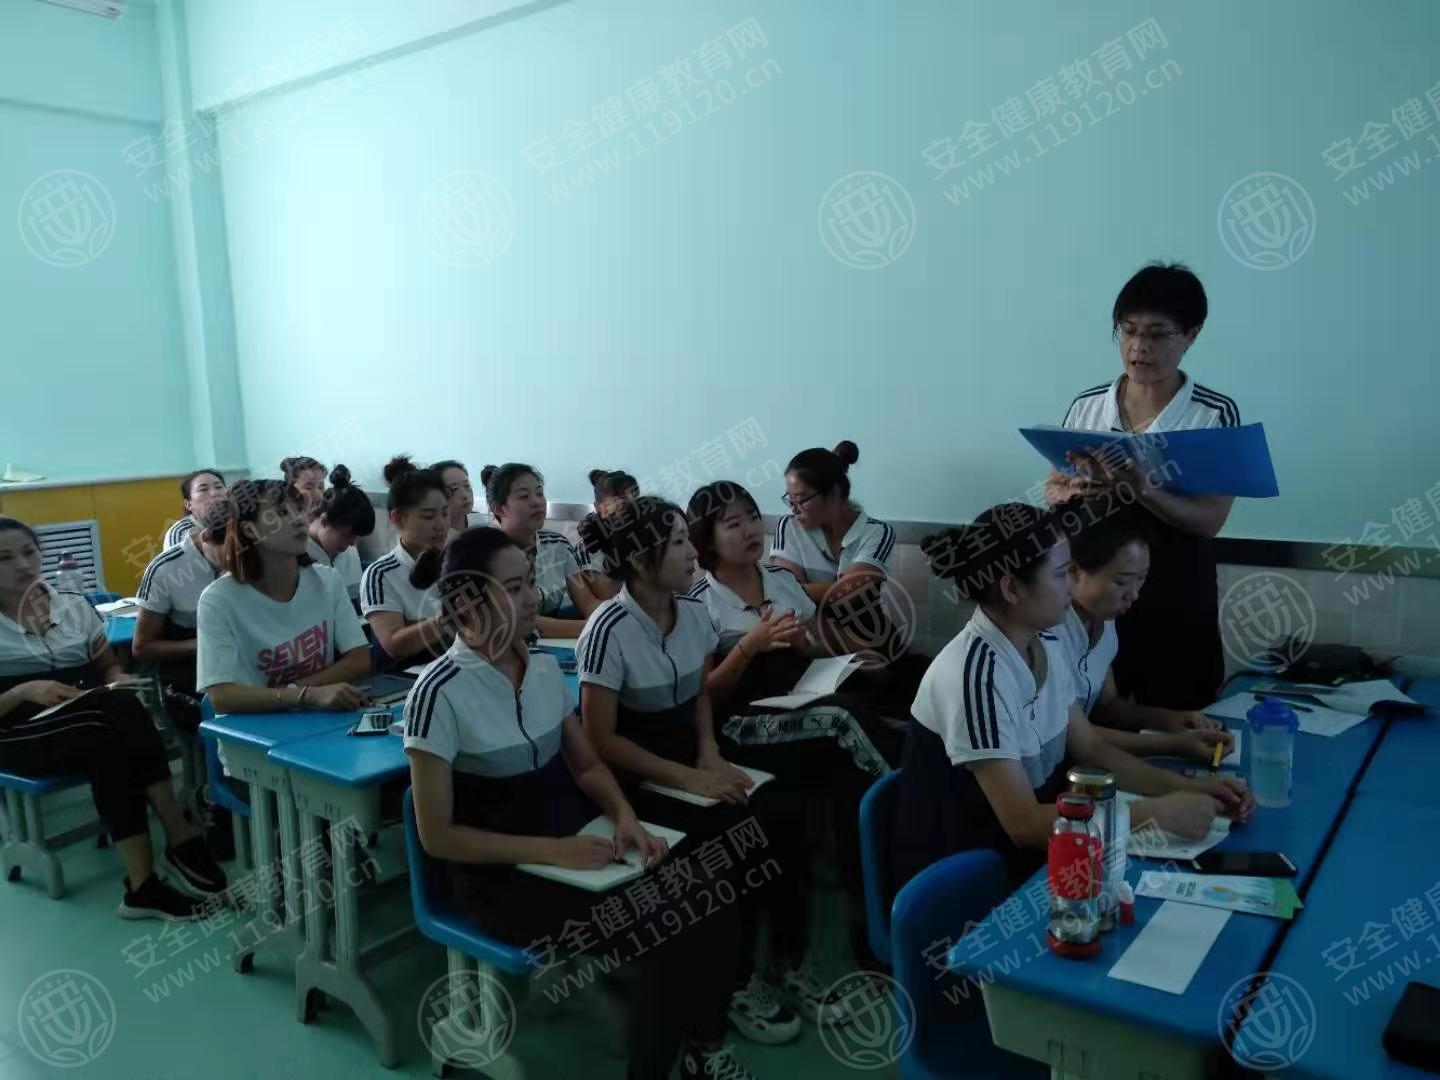 石家庄东兴幼儿园举办健康环保知识公益讲座